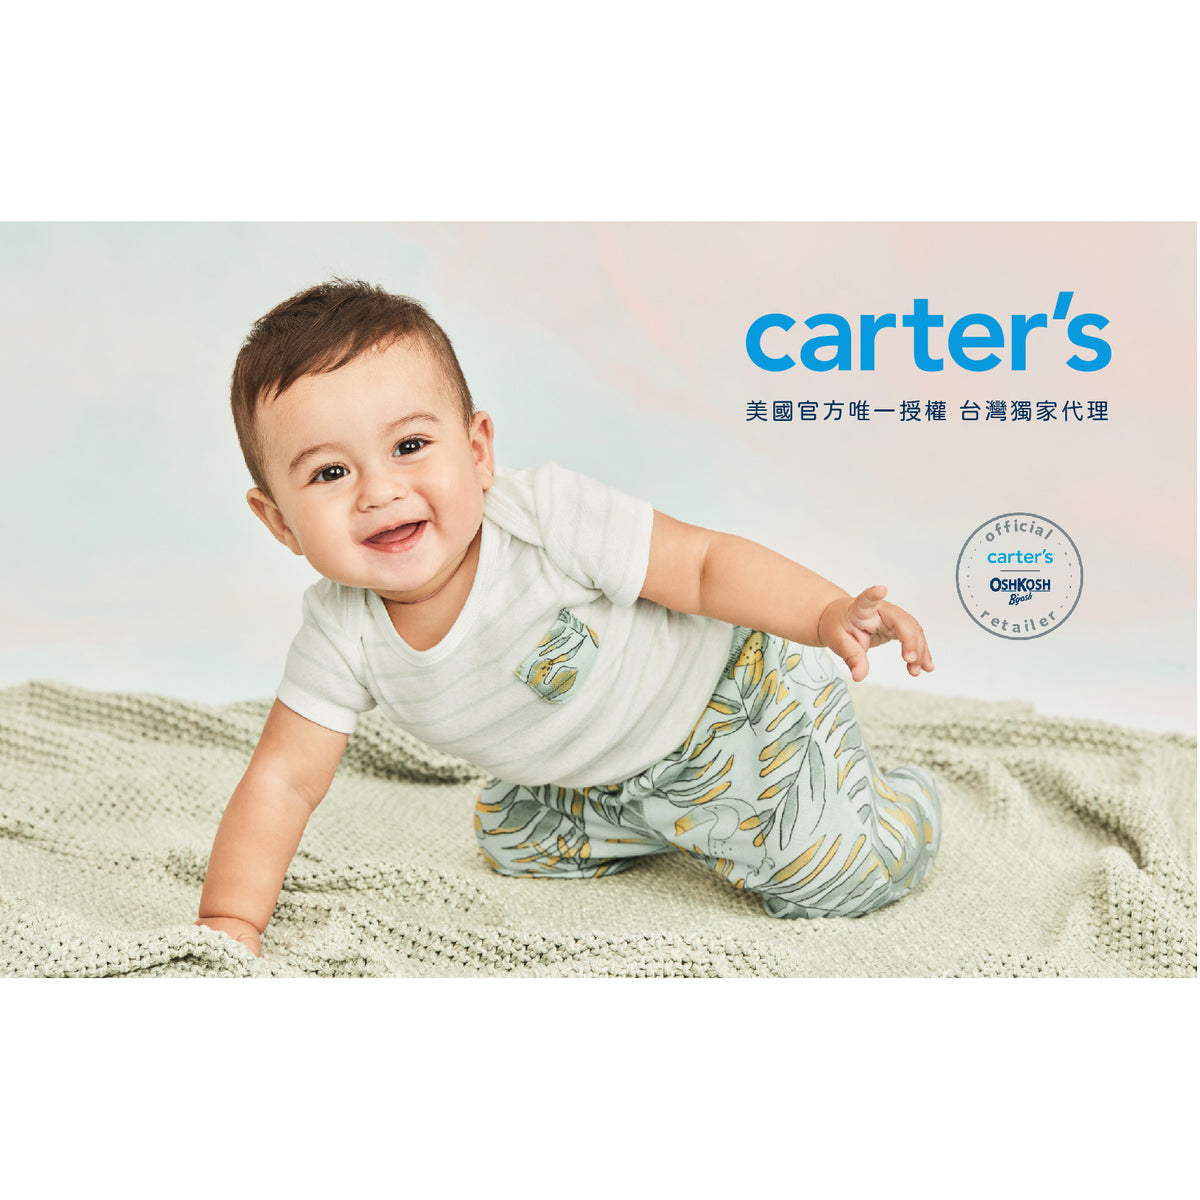 Carter's 英式風格藍格紋外套(6M-24M)